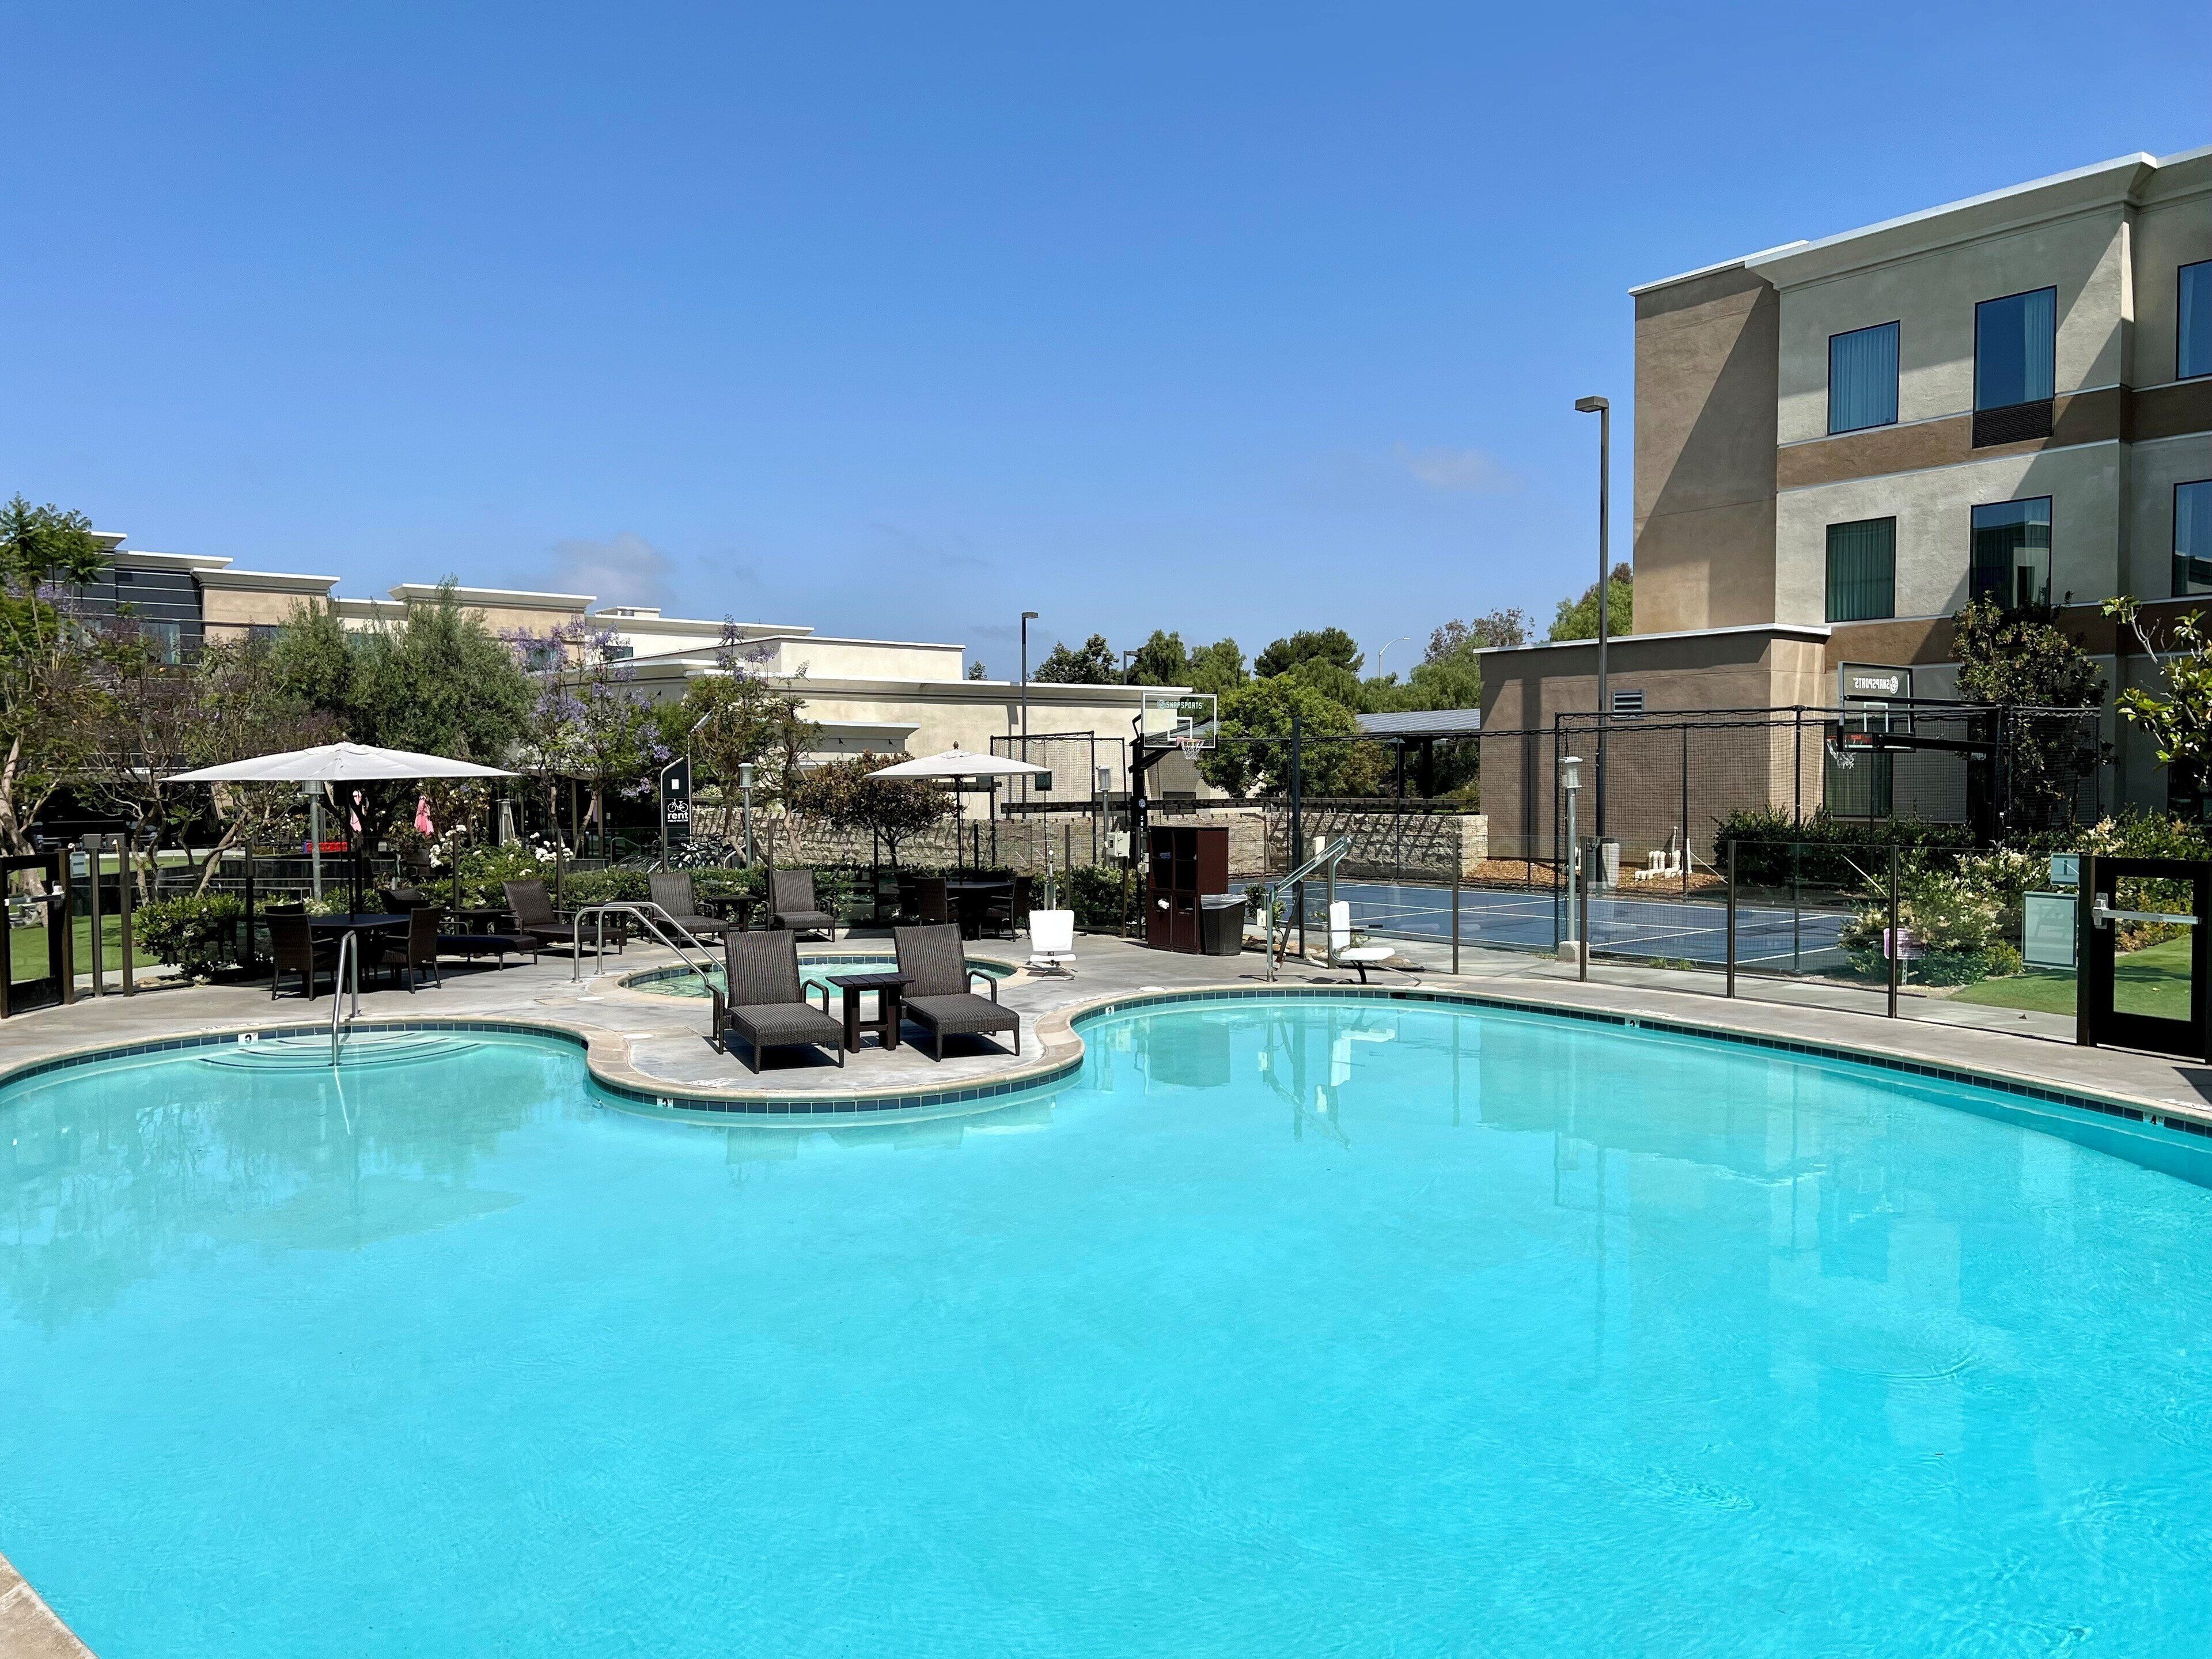 Holiday Inn Carlsbad - San Diego